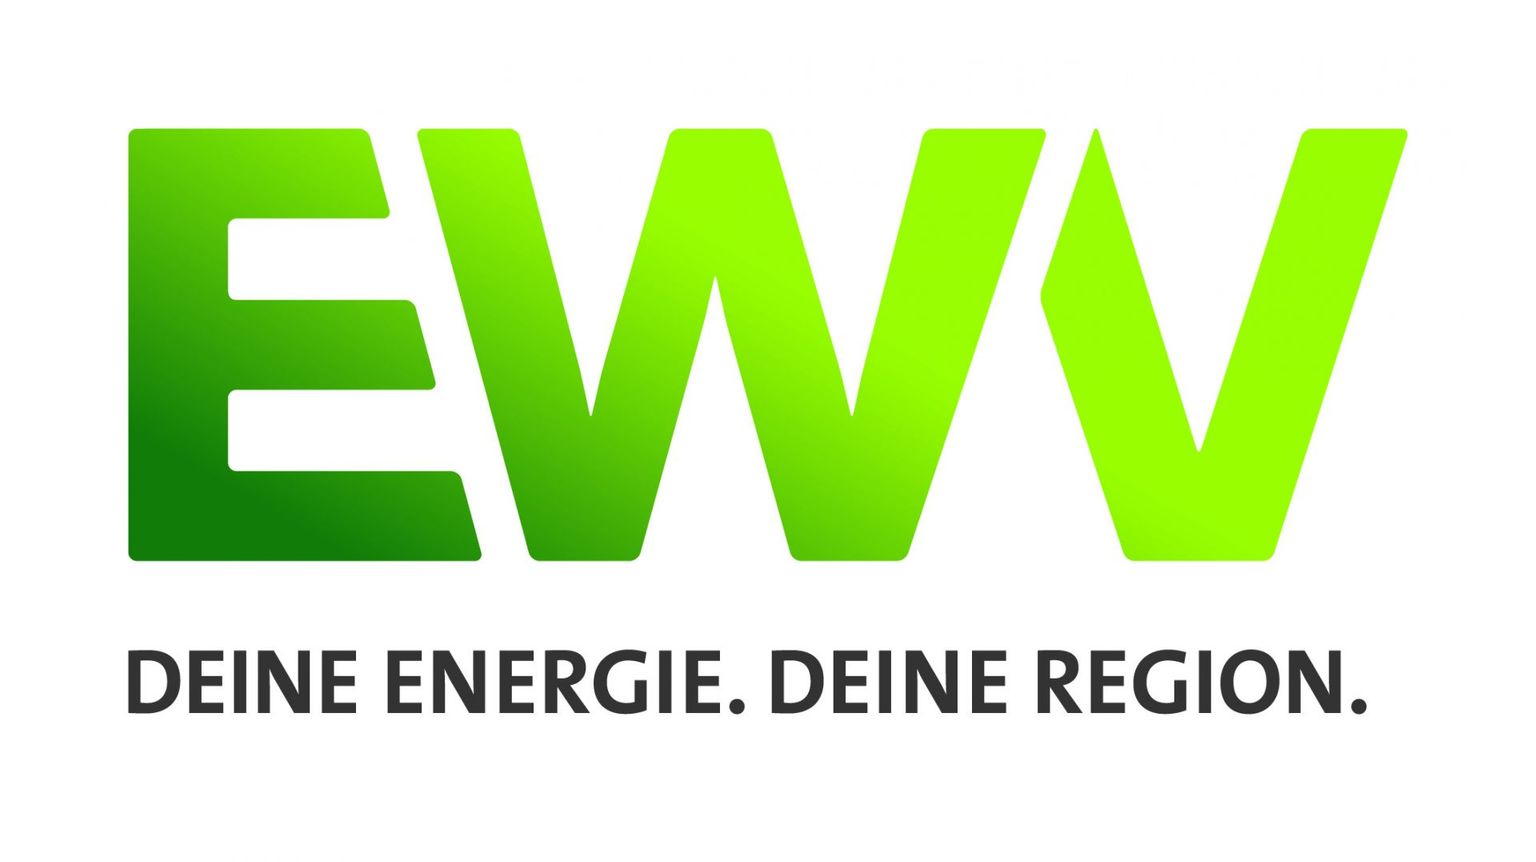 Logo von EWV Energie- und Wasser-Versorgung GmbH